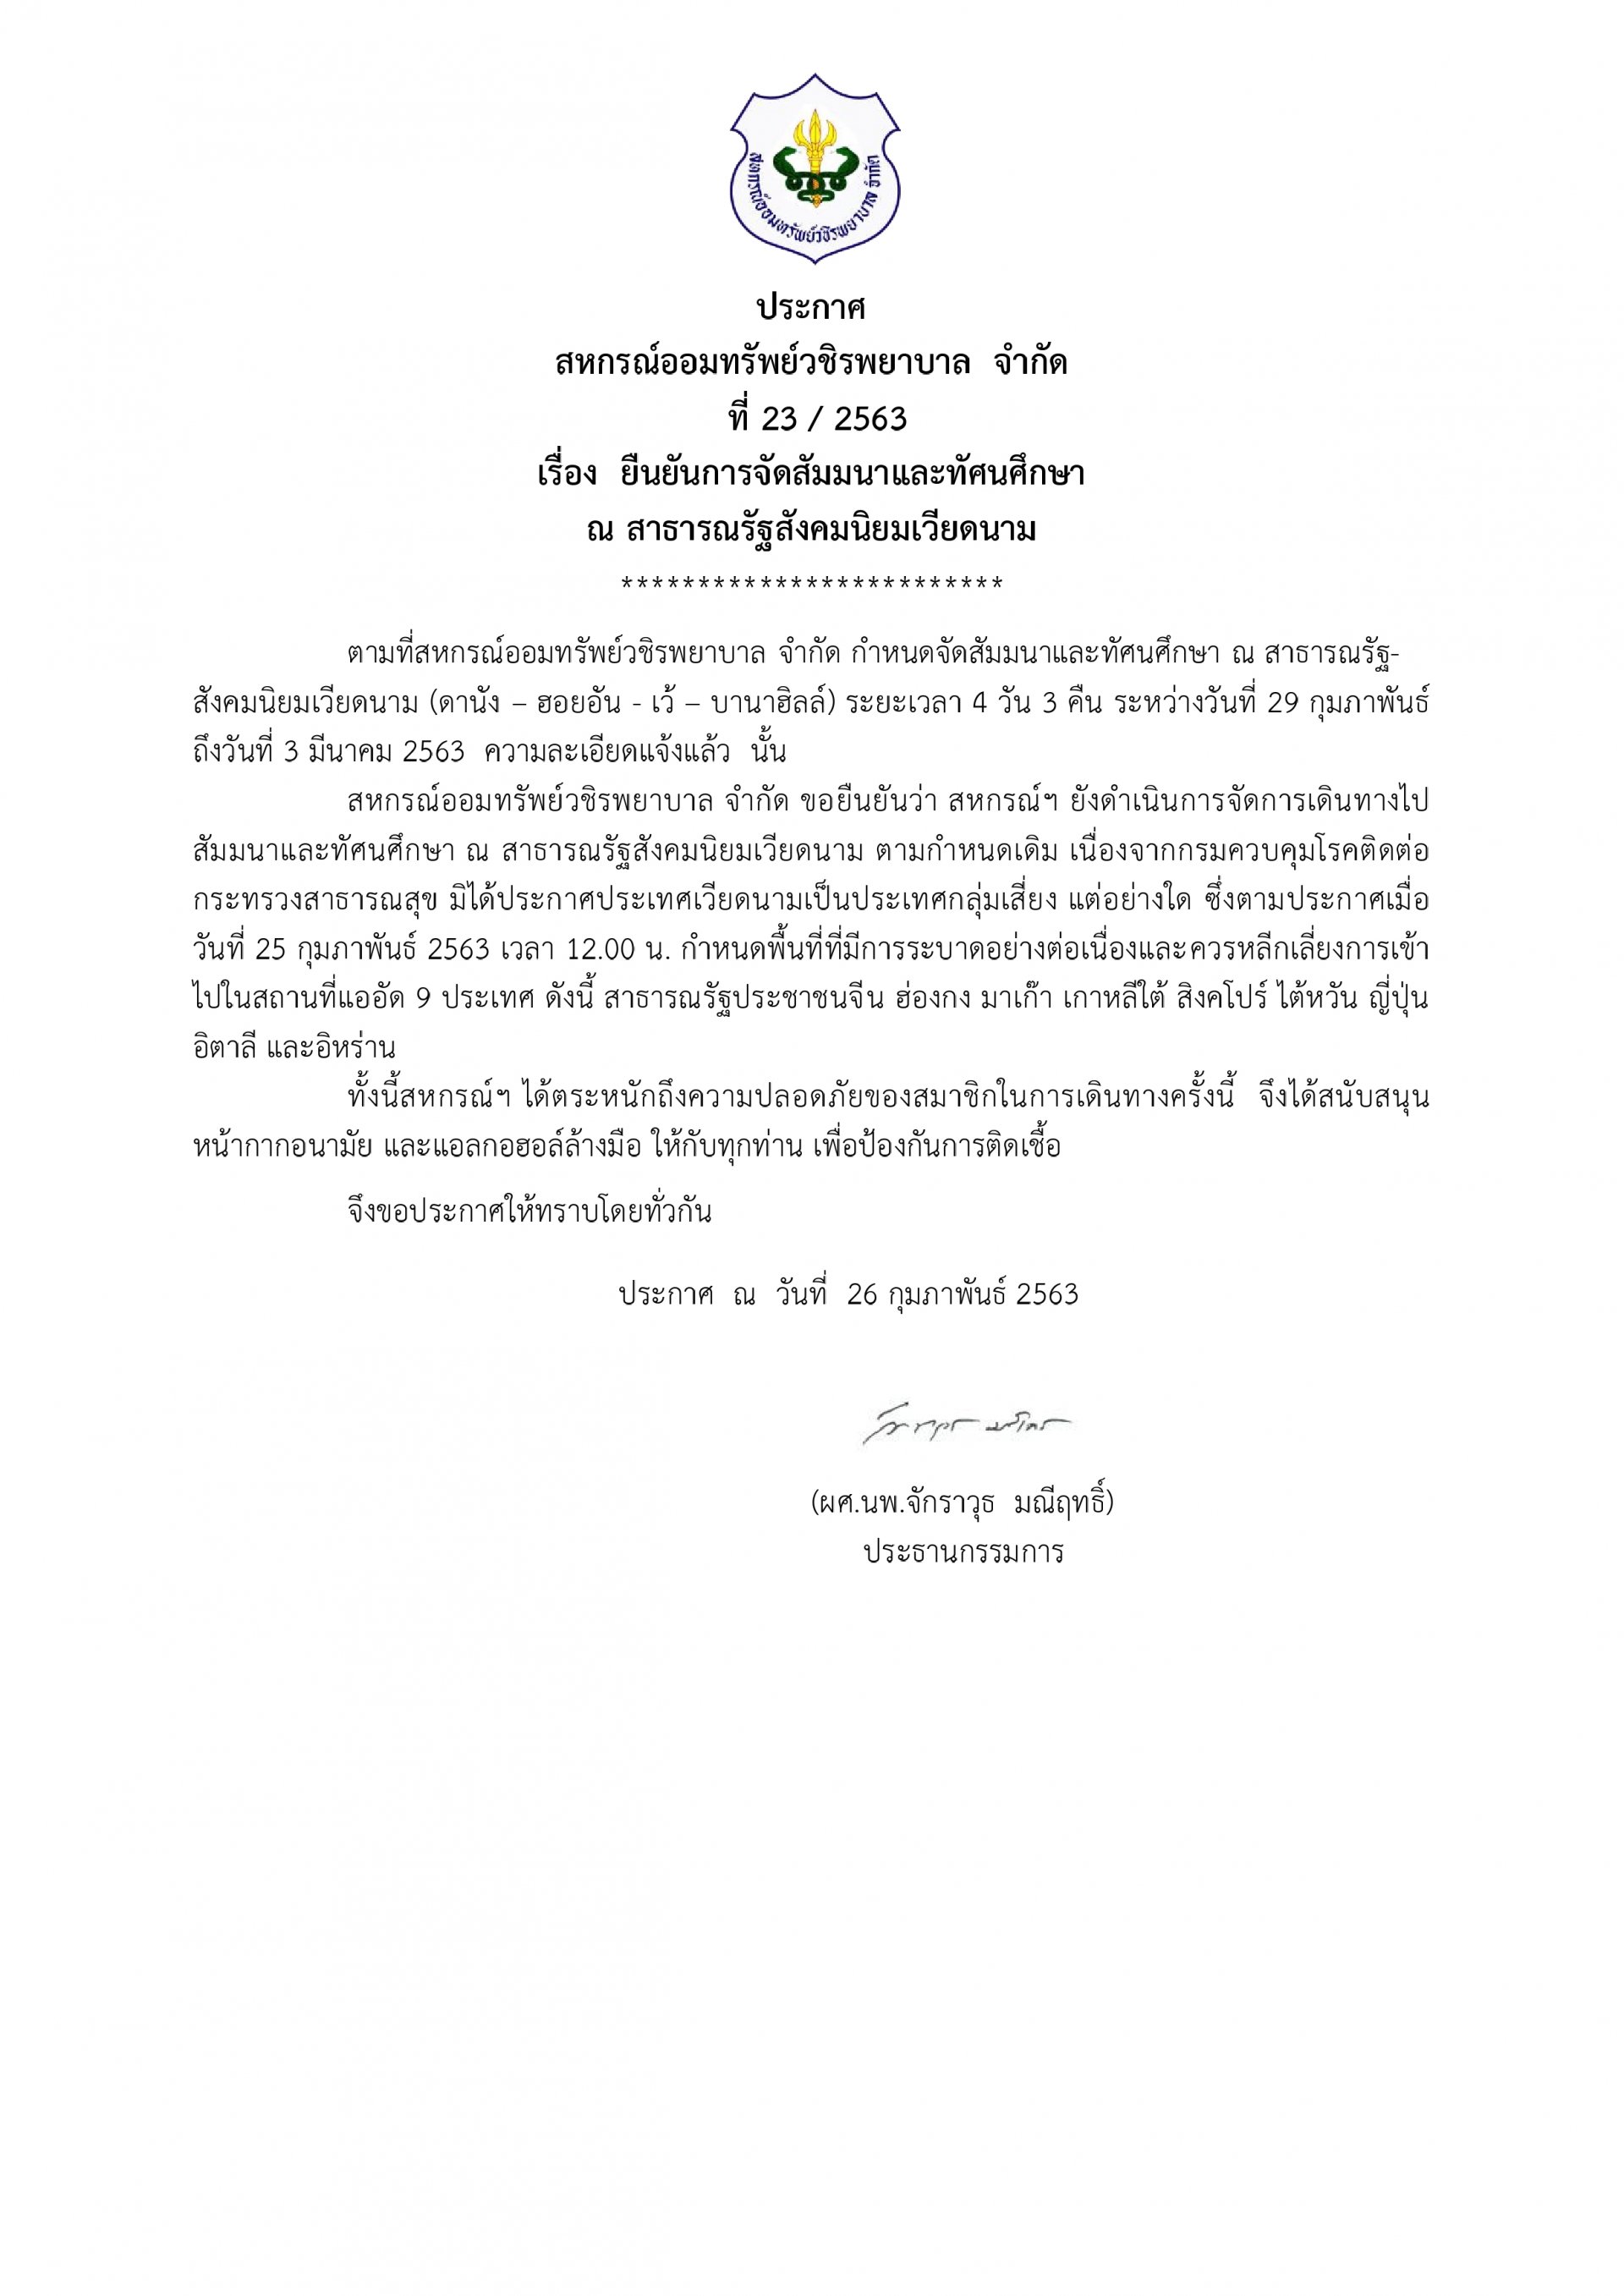 ยืนยันการจัดสัมมนาและทัศนศึกษา ณ สาธารณรัฐสังคมนิยมเวียดนาม